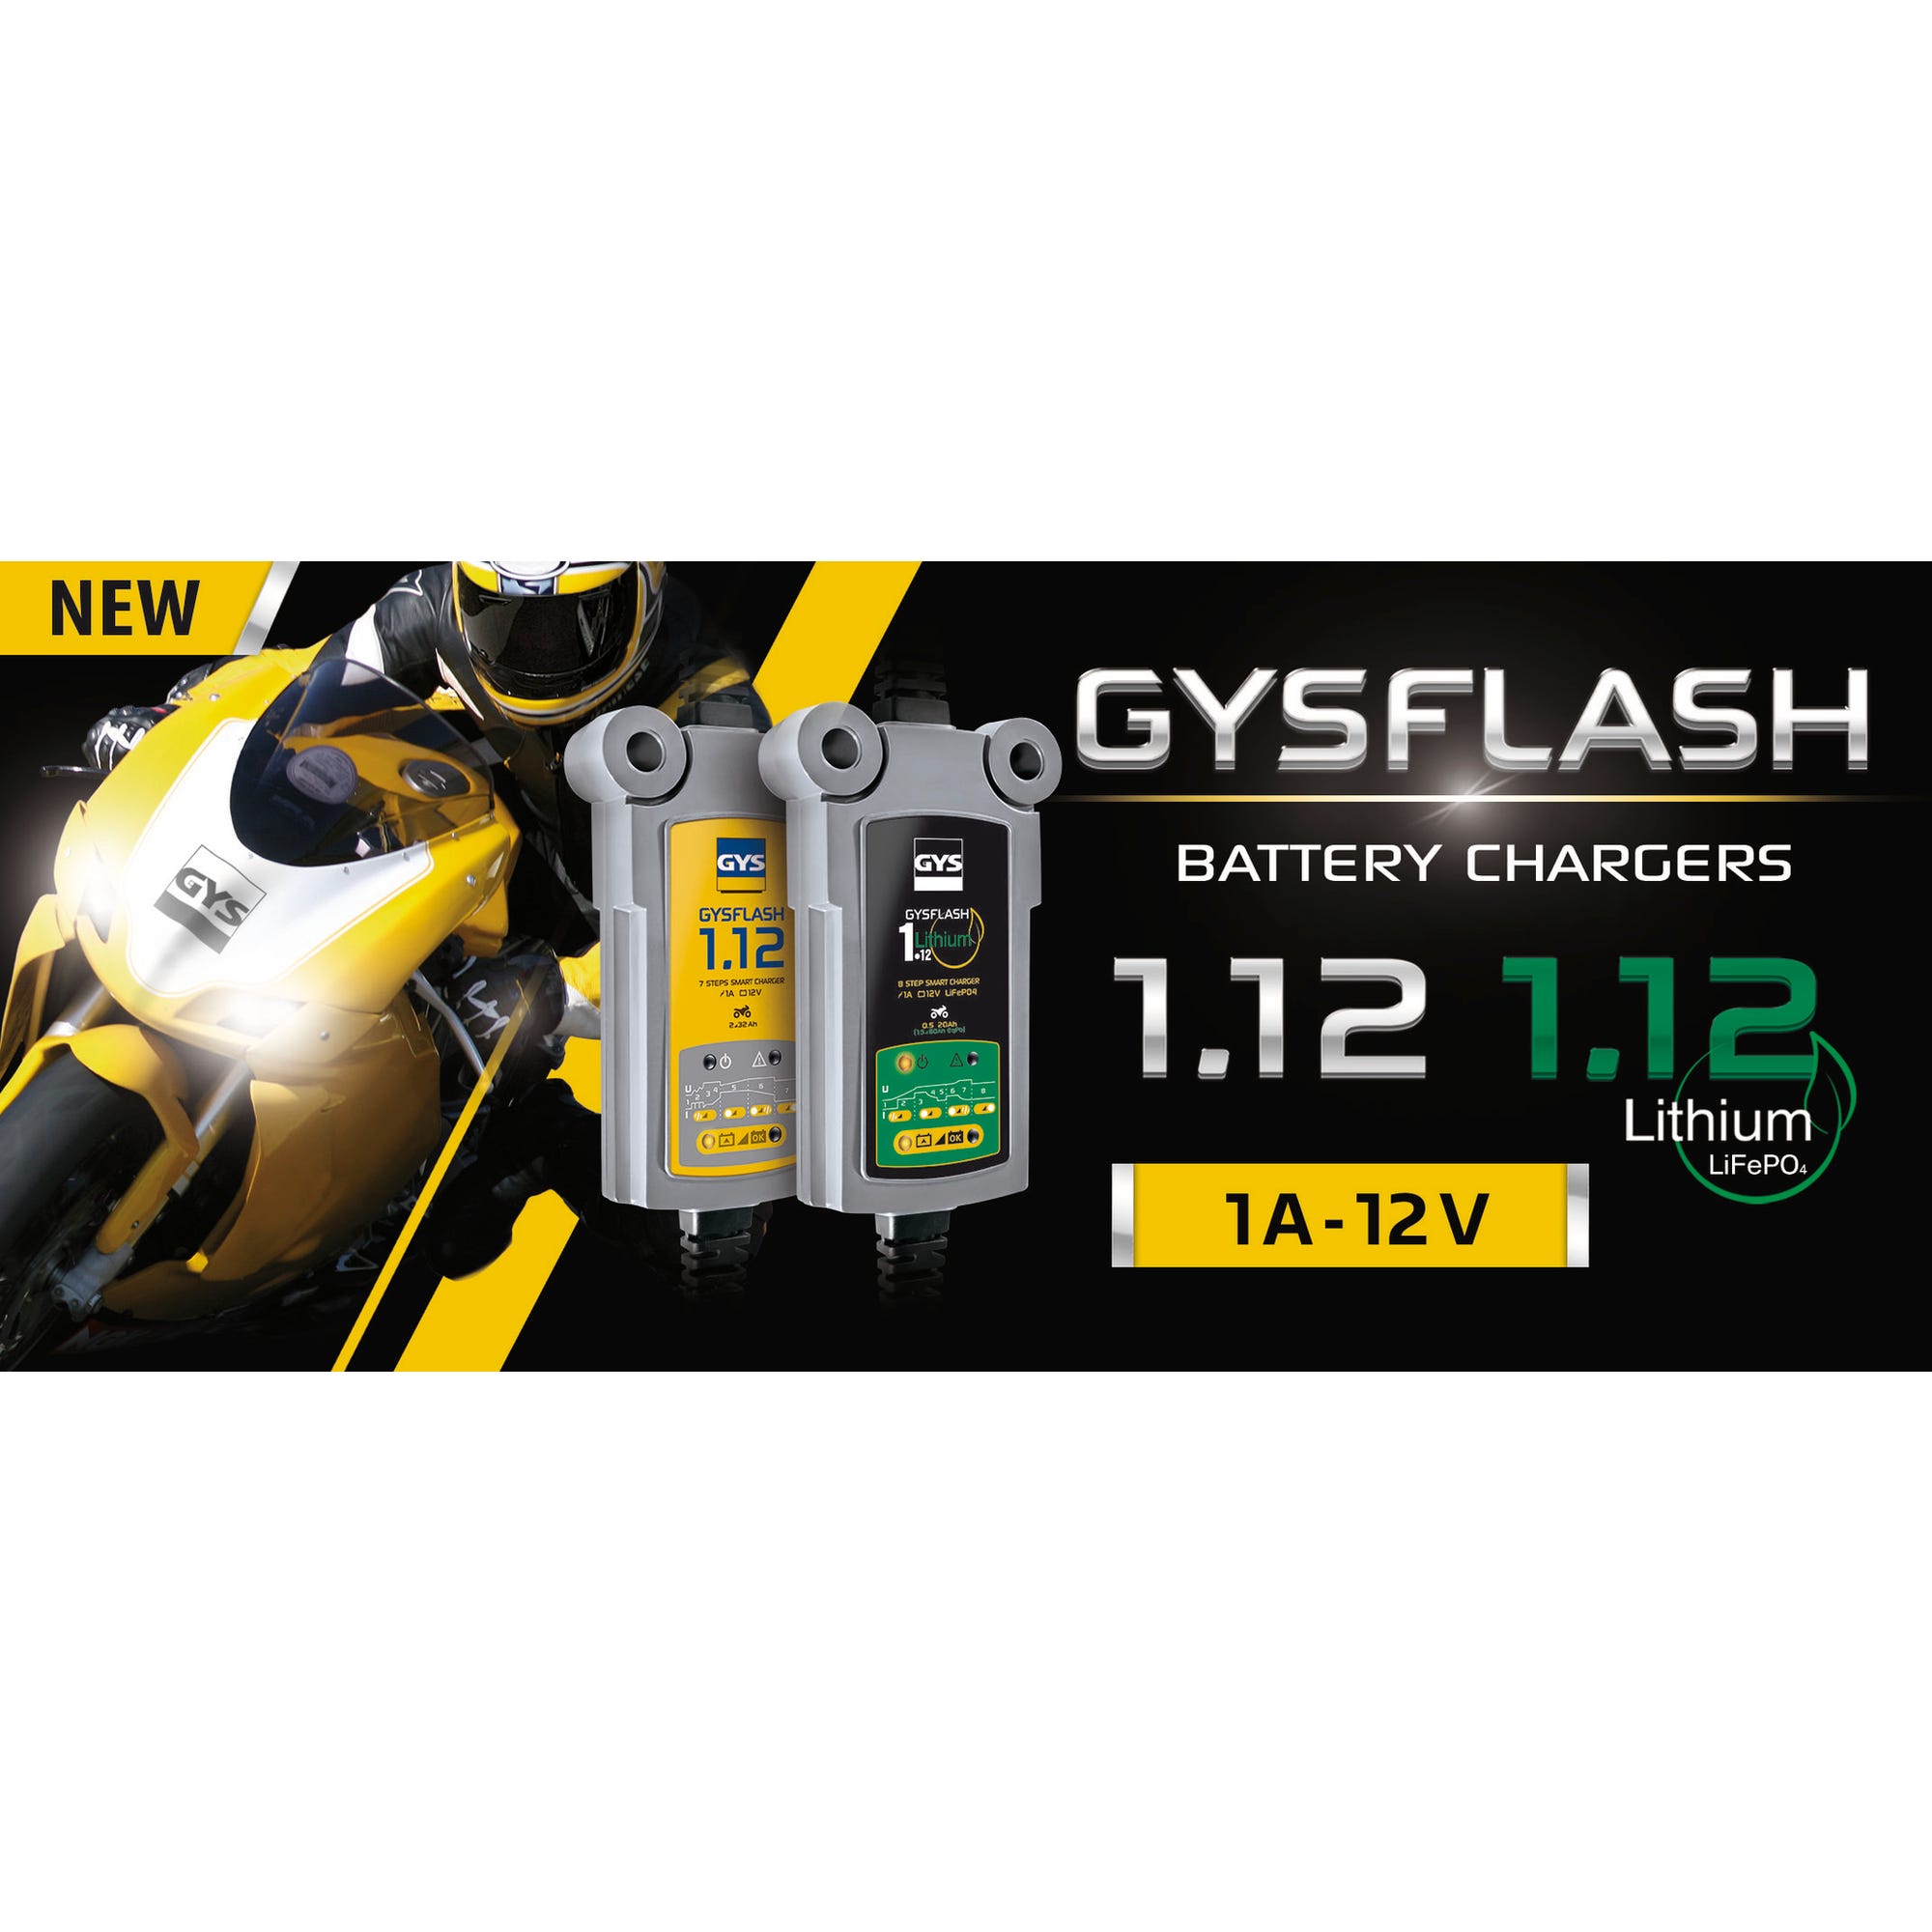 Chargeur de batterie moto pour les batteries 12 V de 1.2 à 32 Ah GYSFLASH 1.12 Gys 7